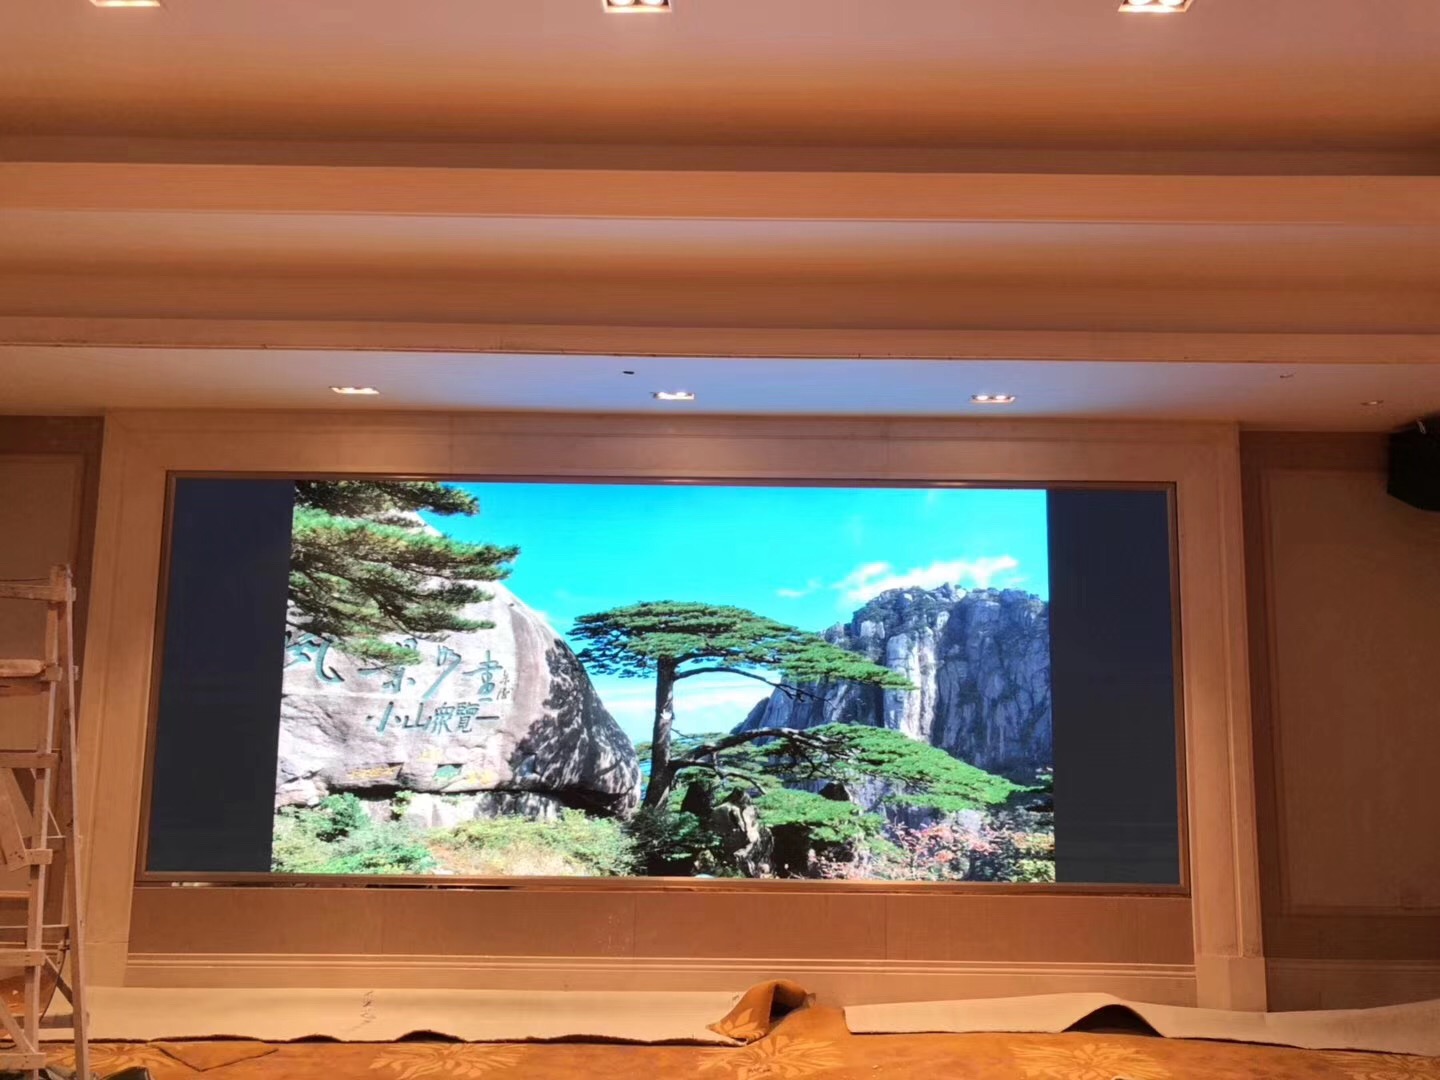  深圳維也納酒店室內P3顯示屏